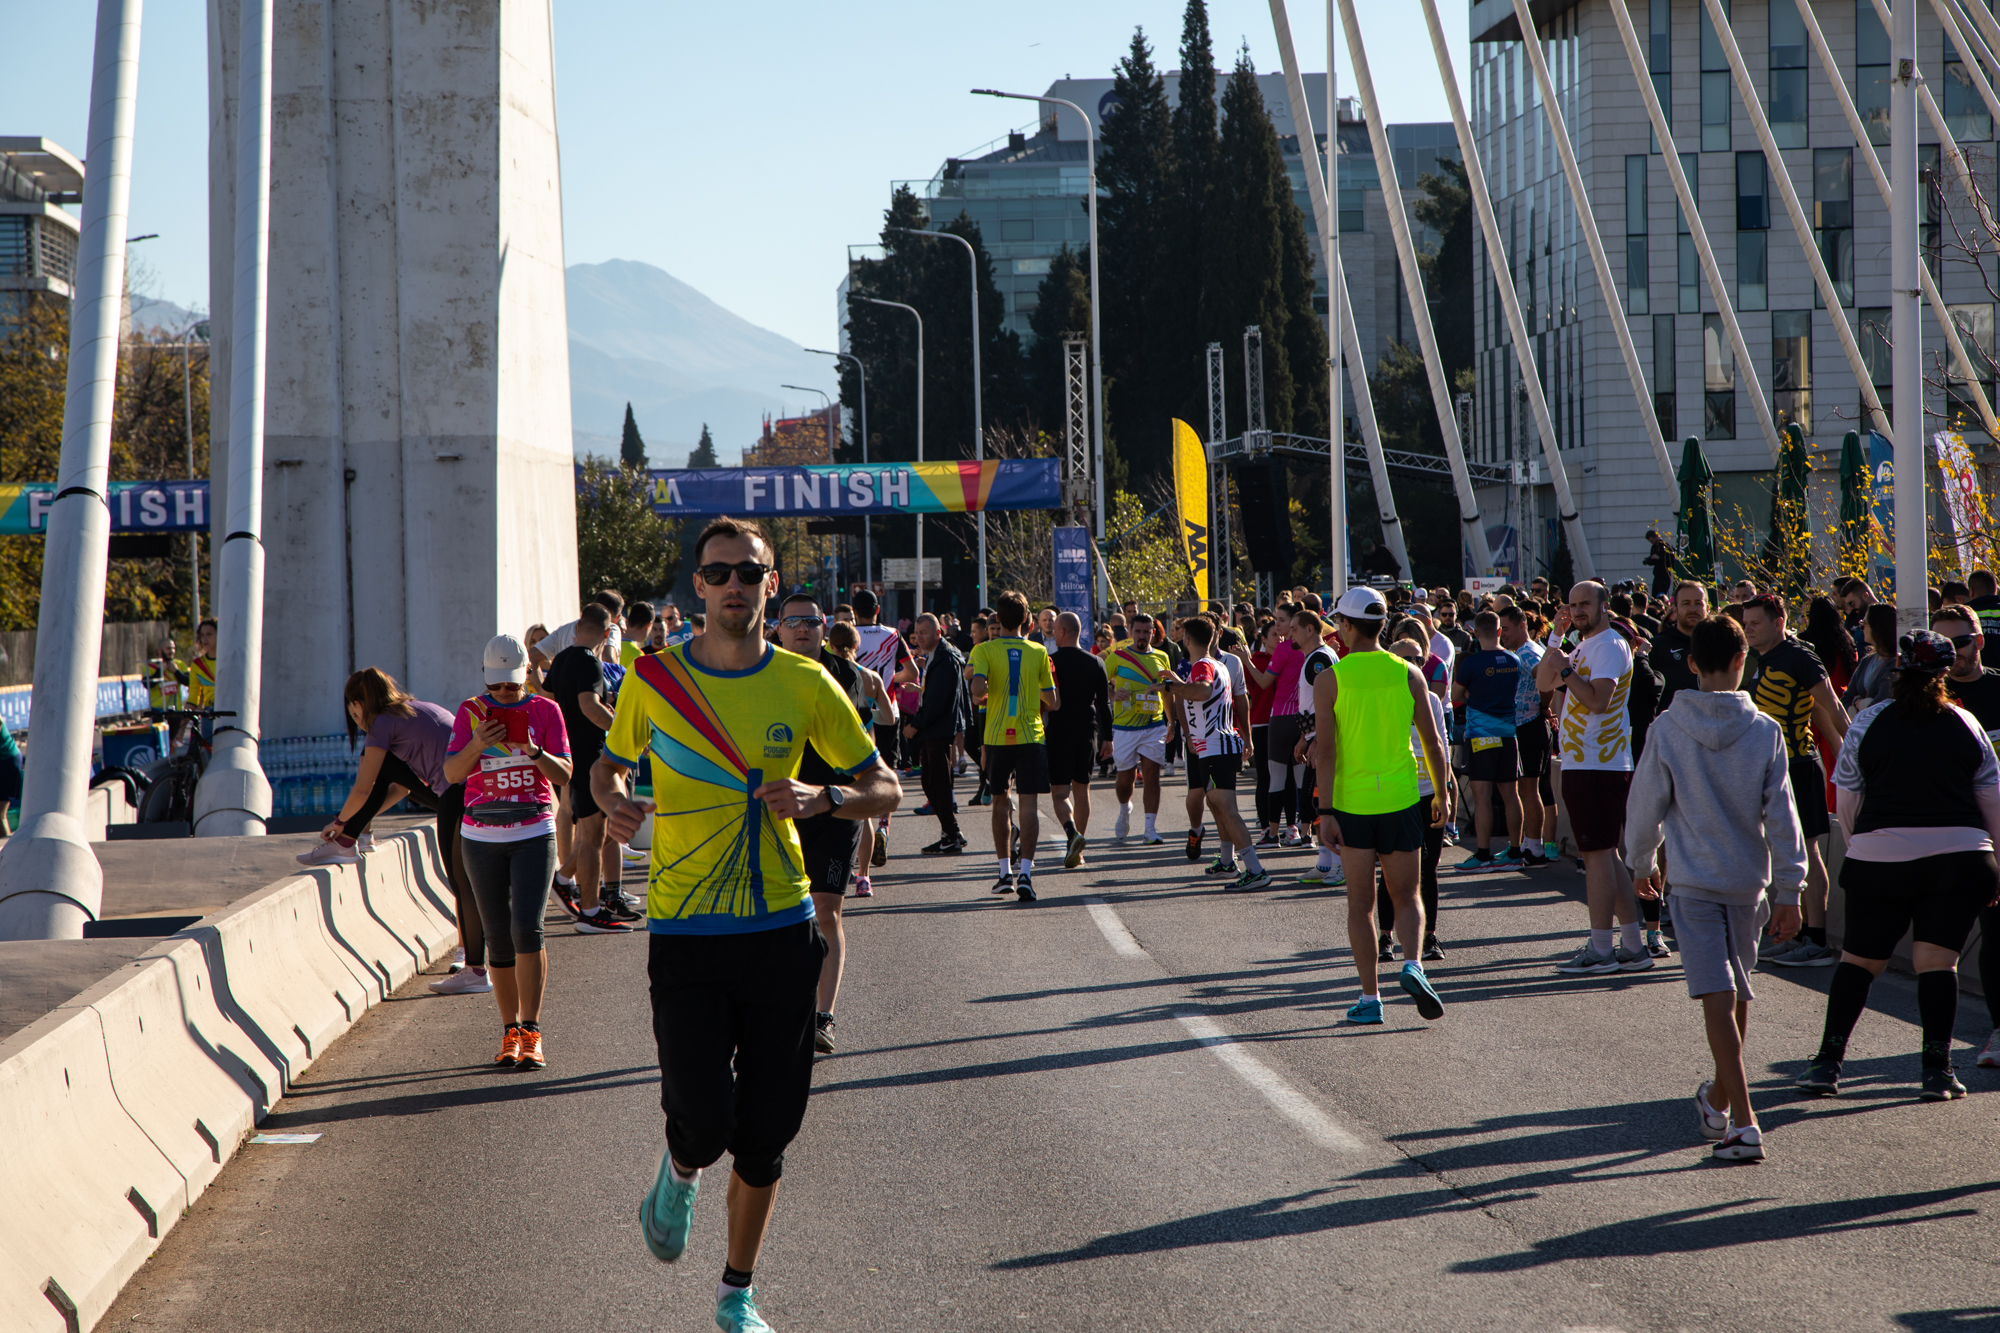 Fenomenalnom maratonskom trkom obilježili premijerno izdanje Podgorica Millennium run-a